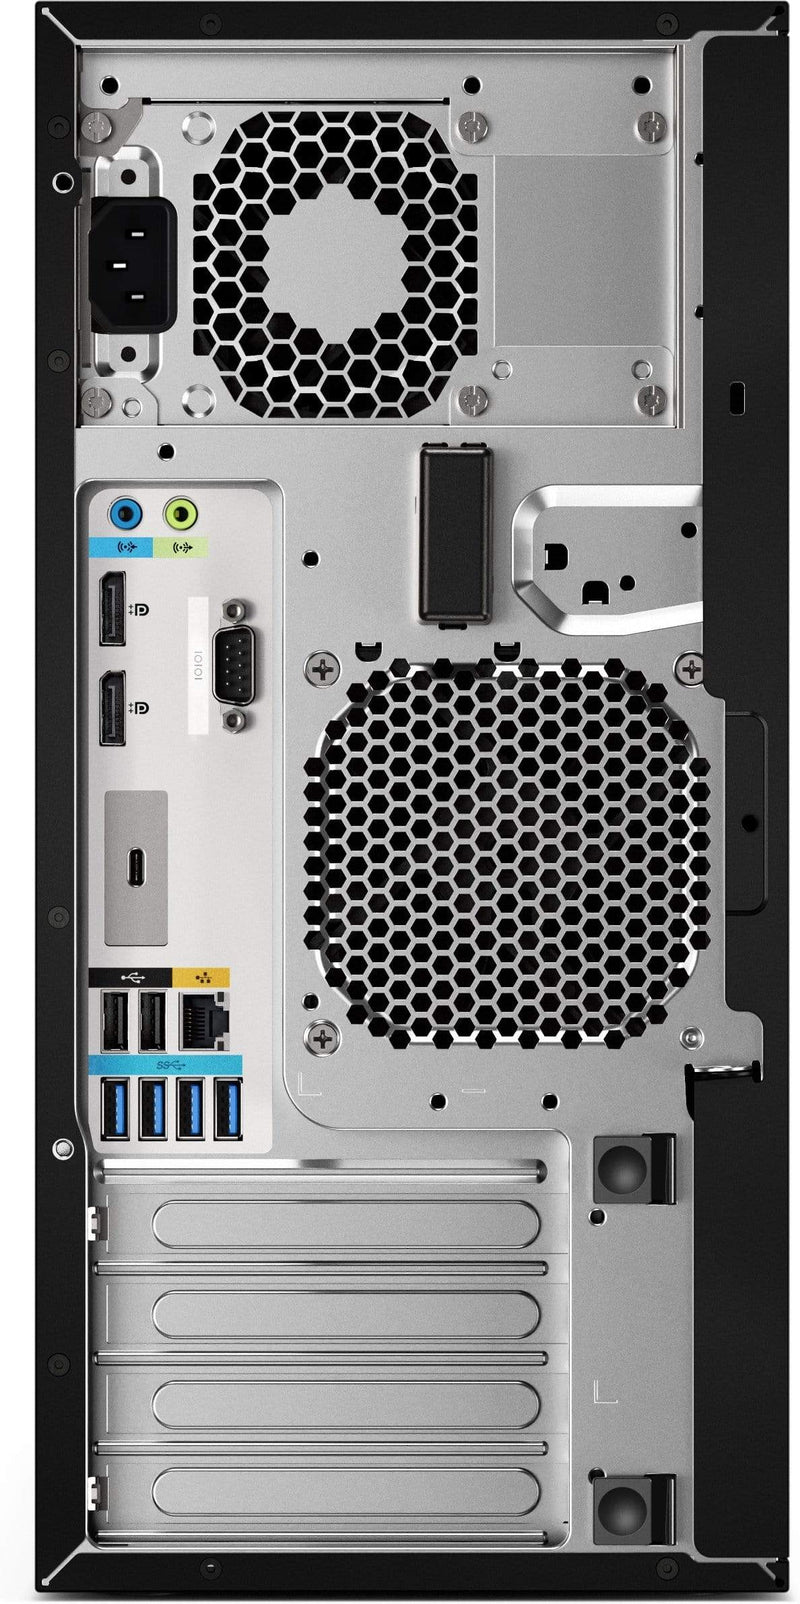 HP Z2 G4 Intel Core i7-8700 16GB RAM 512GB SSD Mini Workstation PC Black Windows 10 Pro 4RX02EA